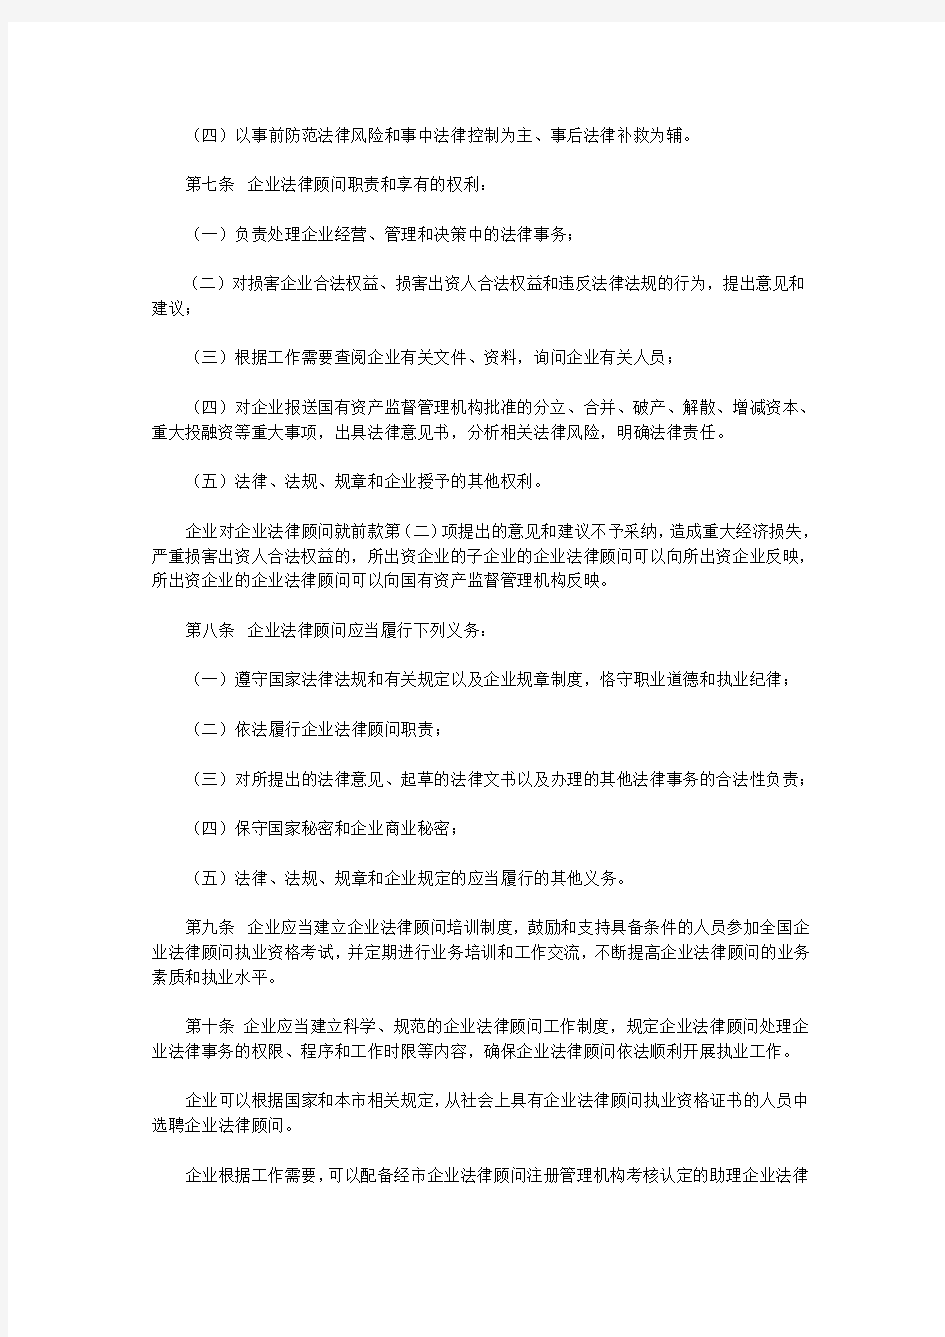 天津市实施企业法律顾问管理办法实施细则